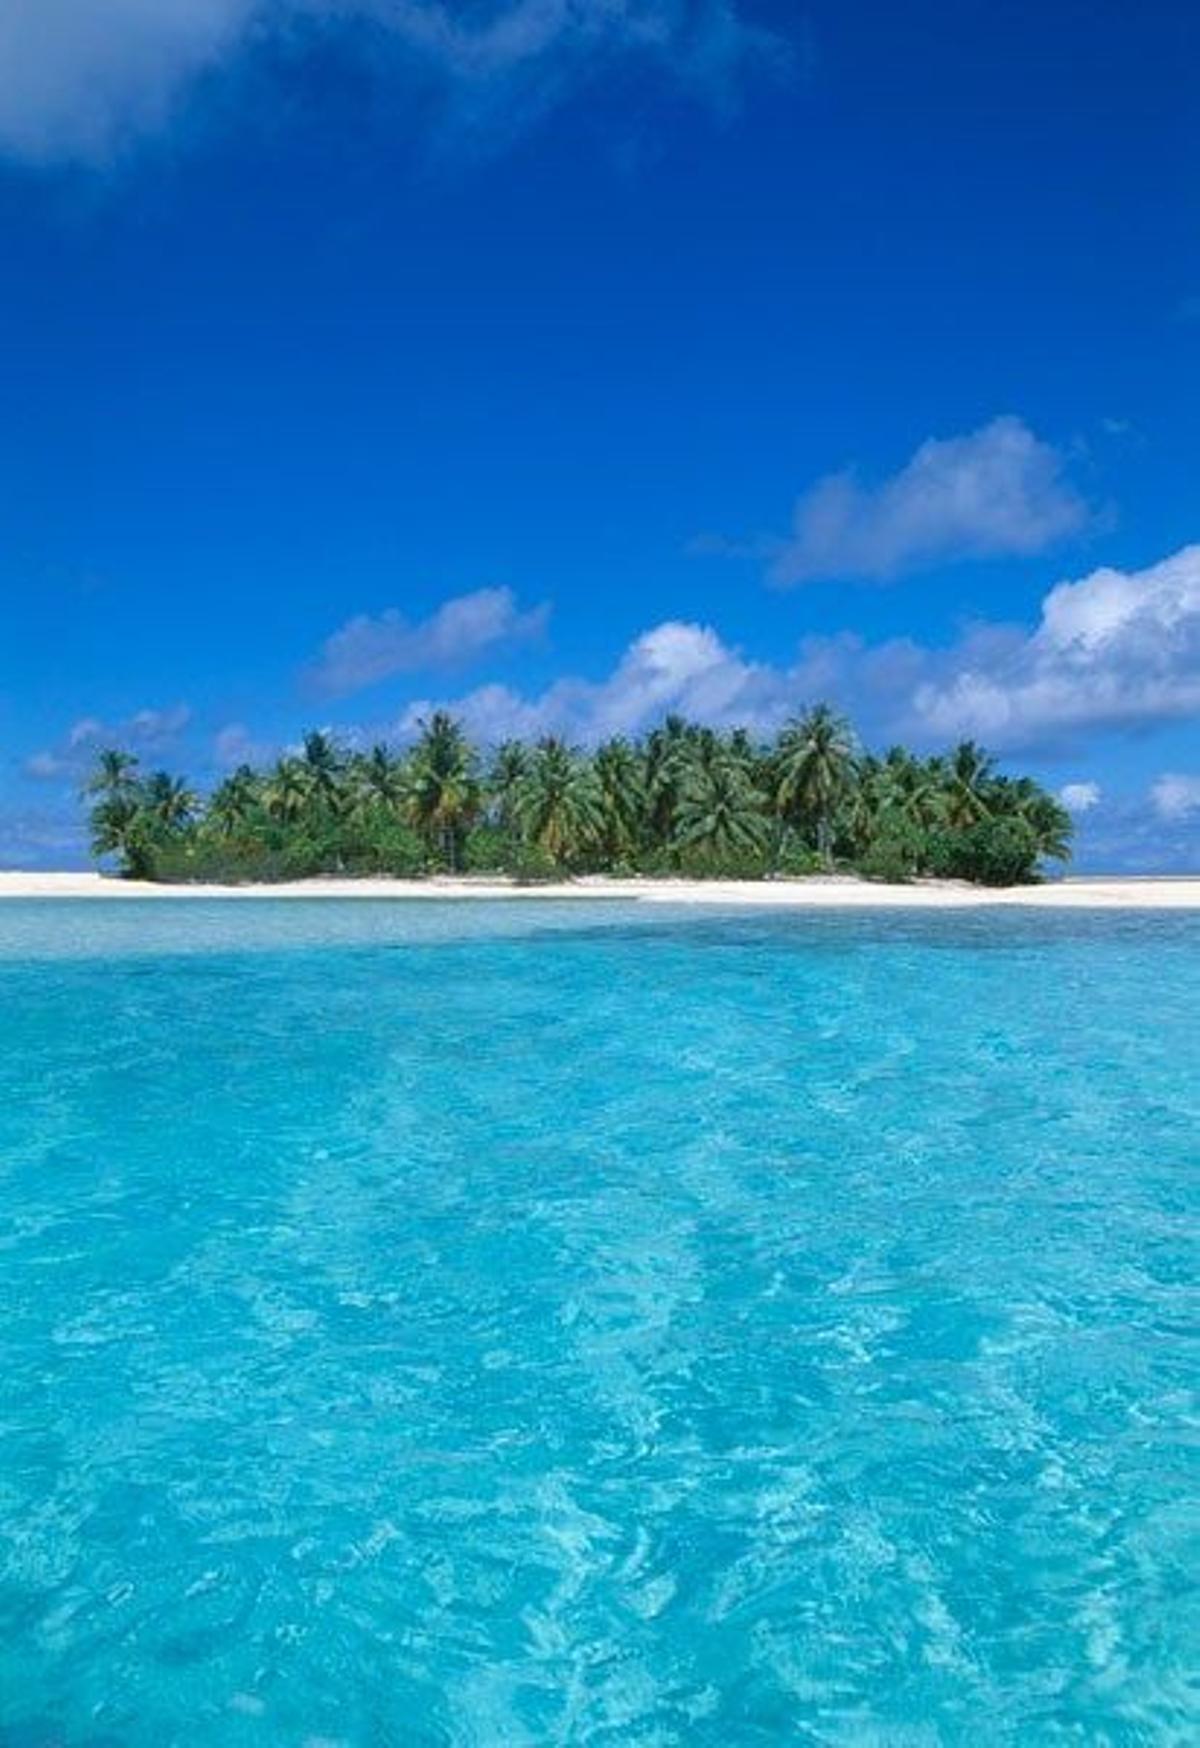 Uno de los islotes paradisiacos del atolón de Rangiroa.